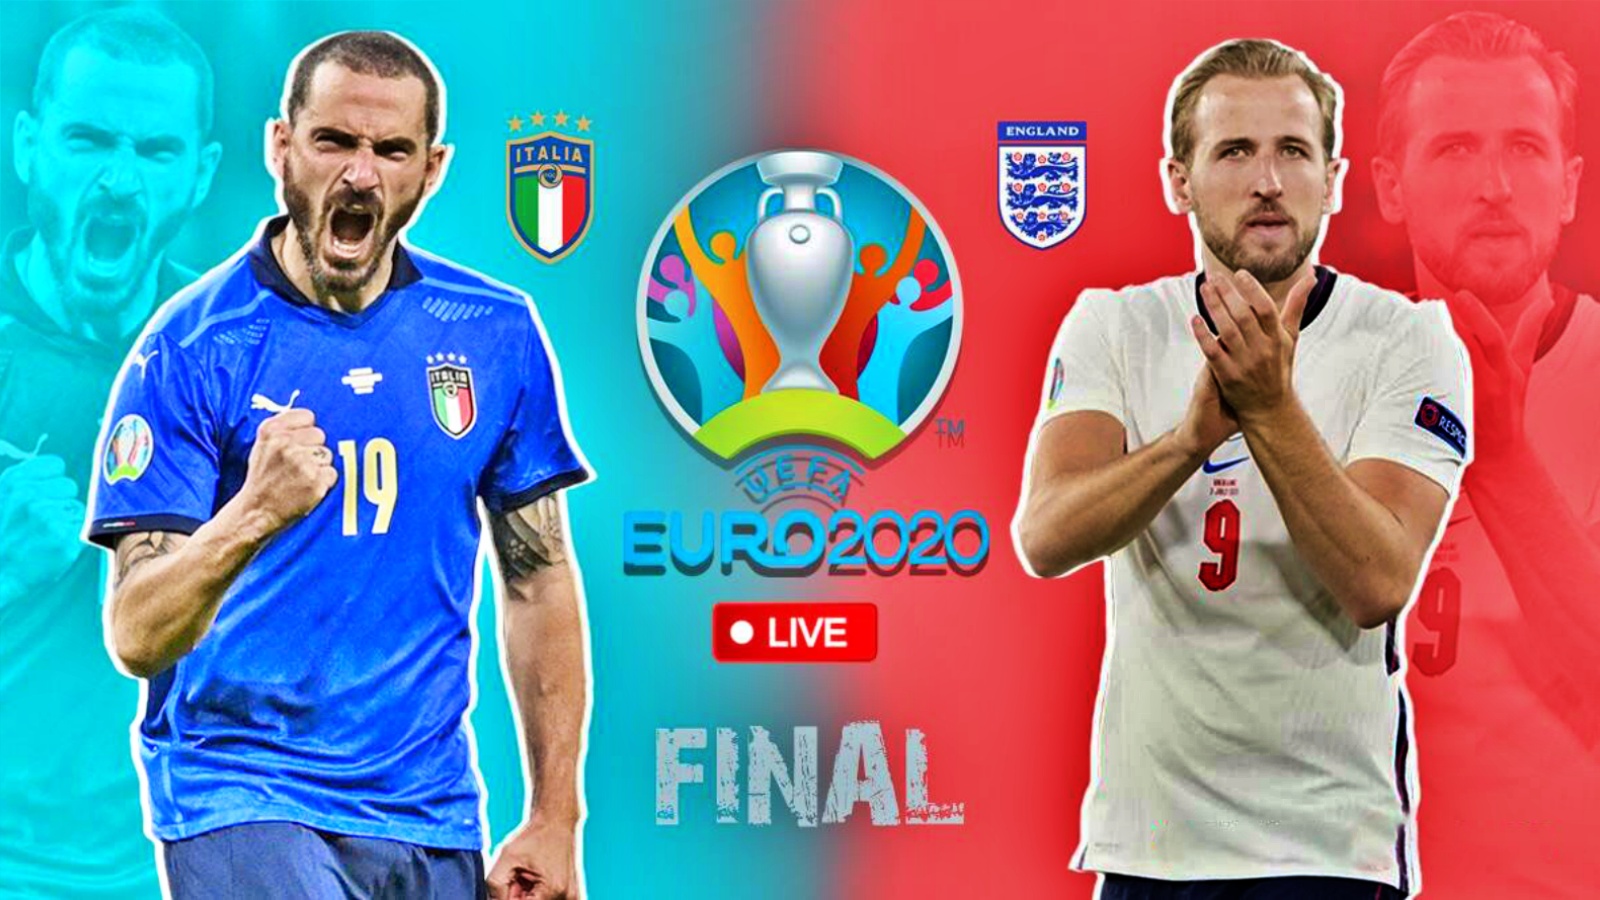 ITALIA - ANGLIA LIVE PRO TV EURO 2020